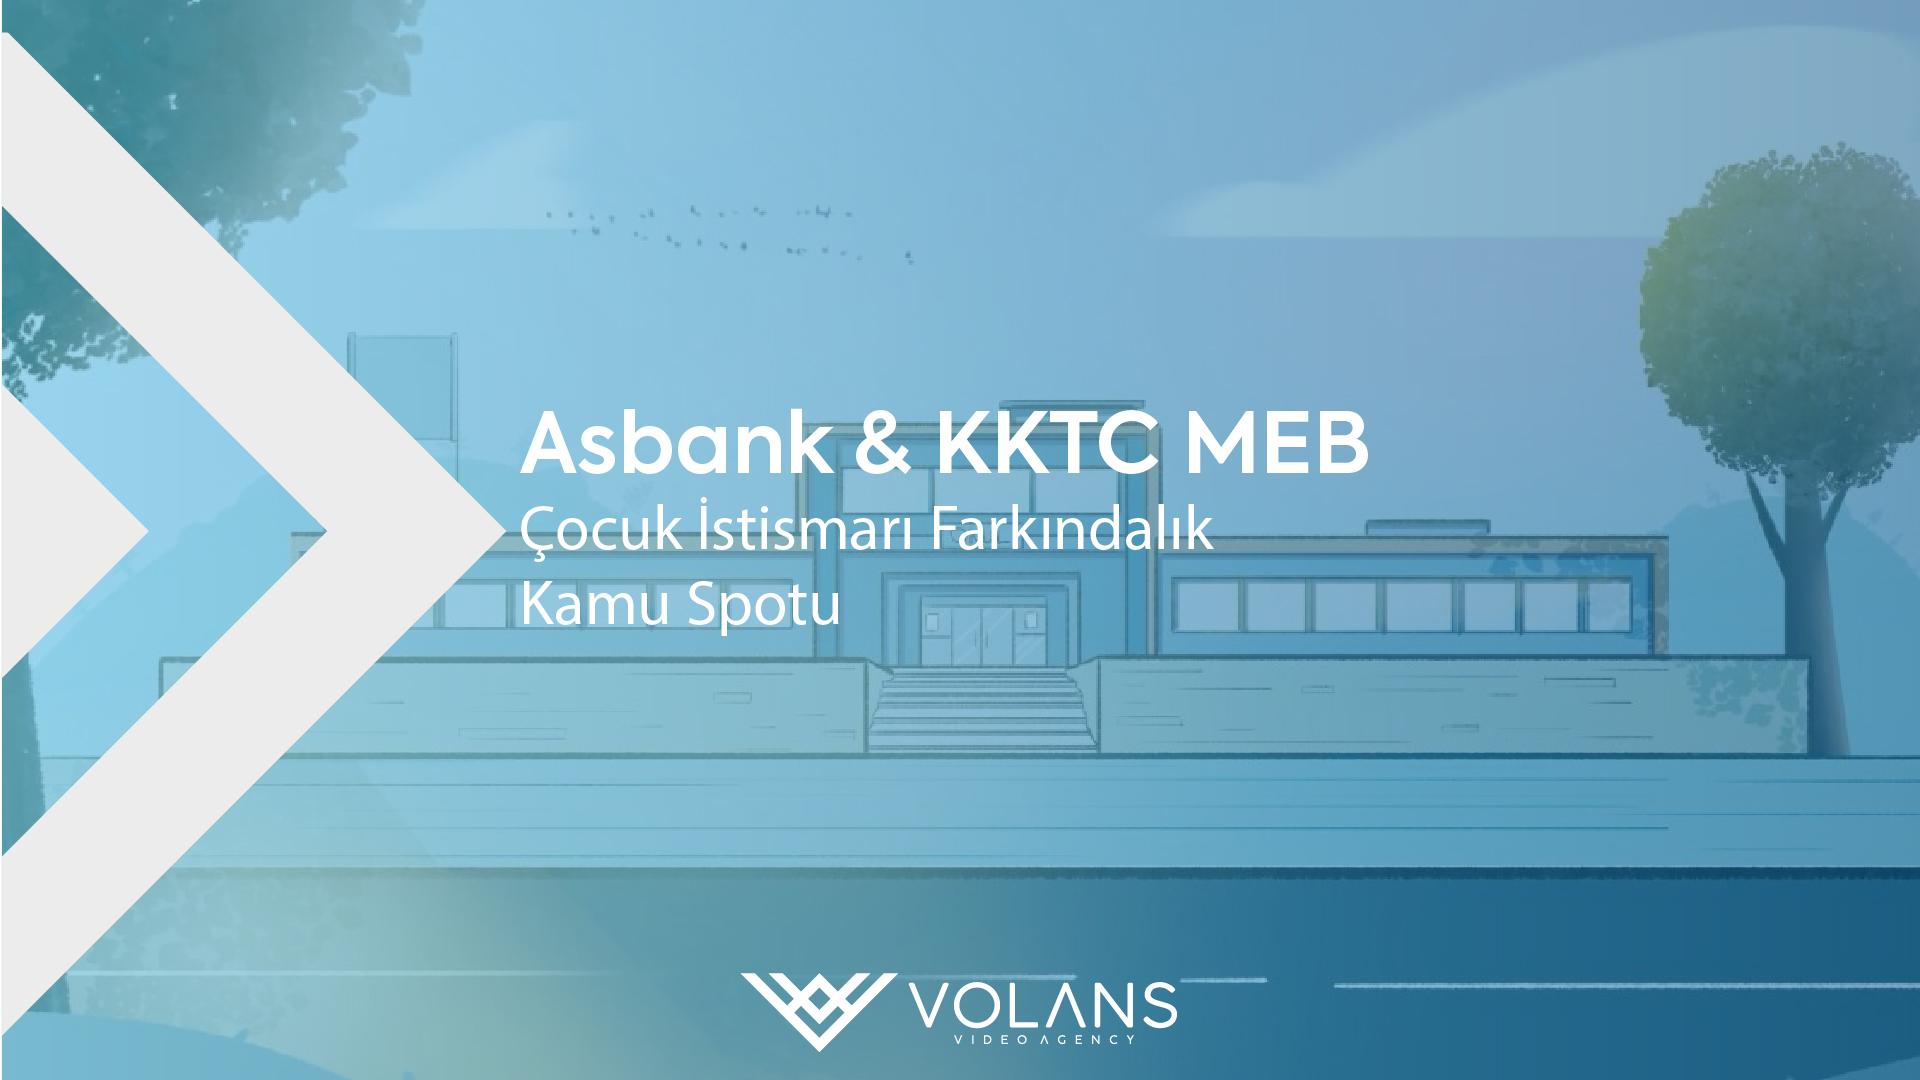 Asbank & KKTC MEB